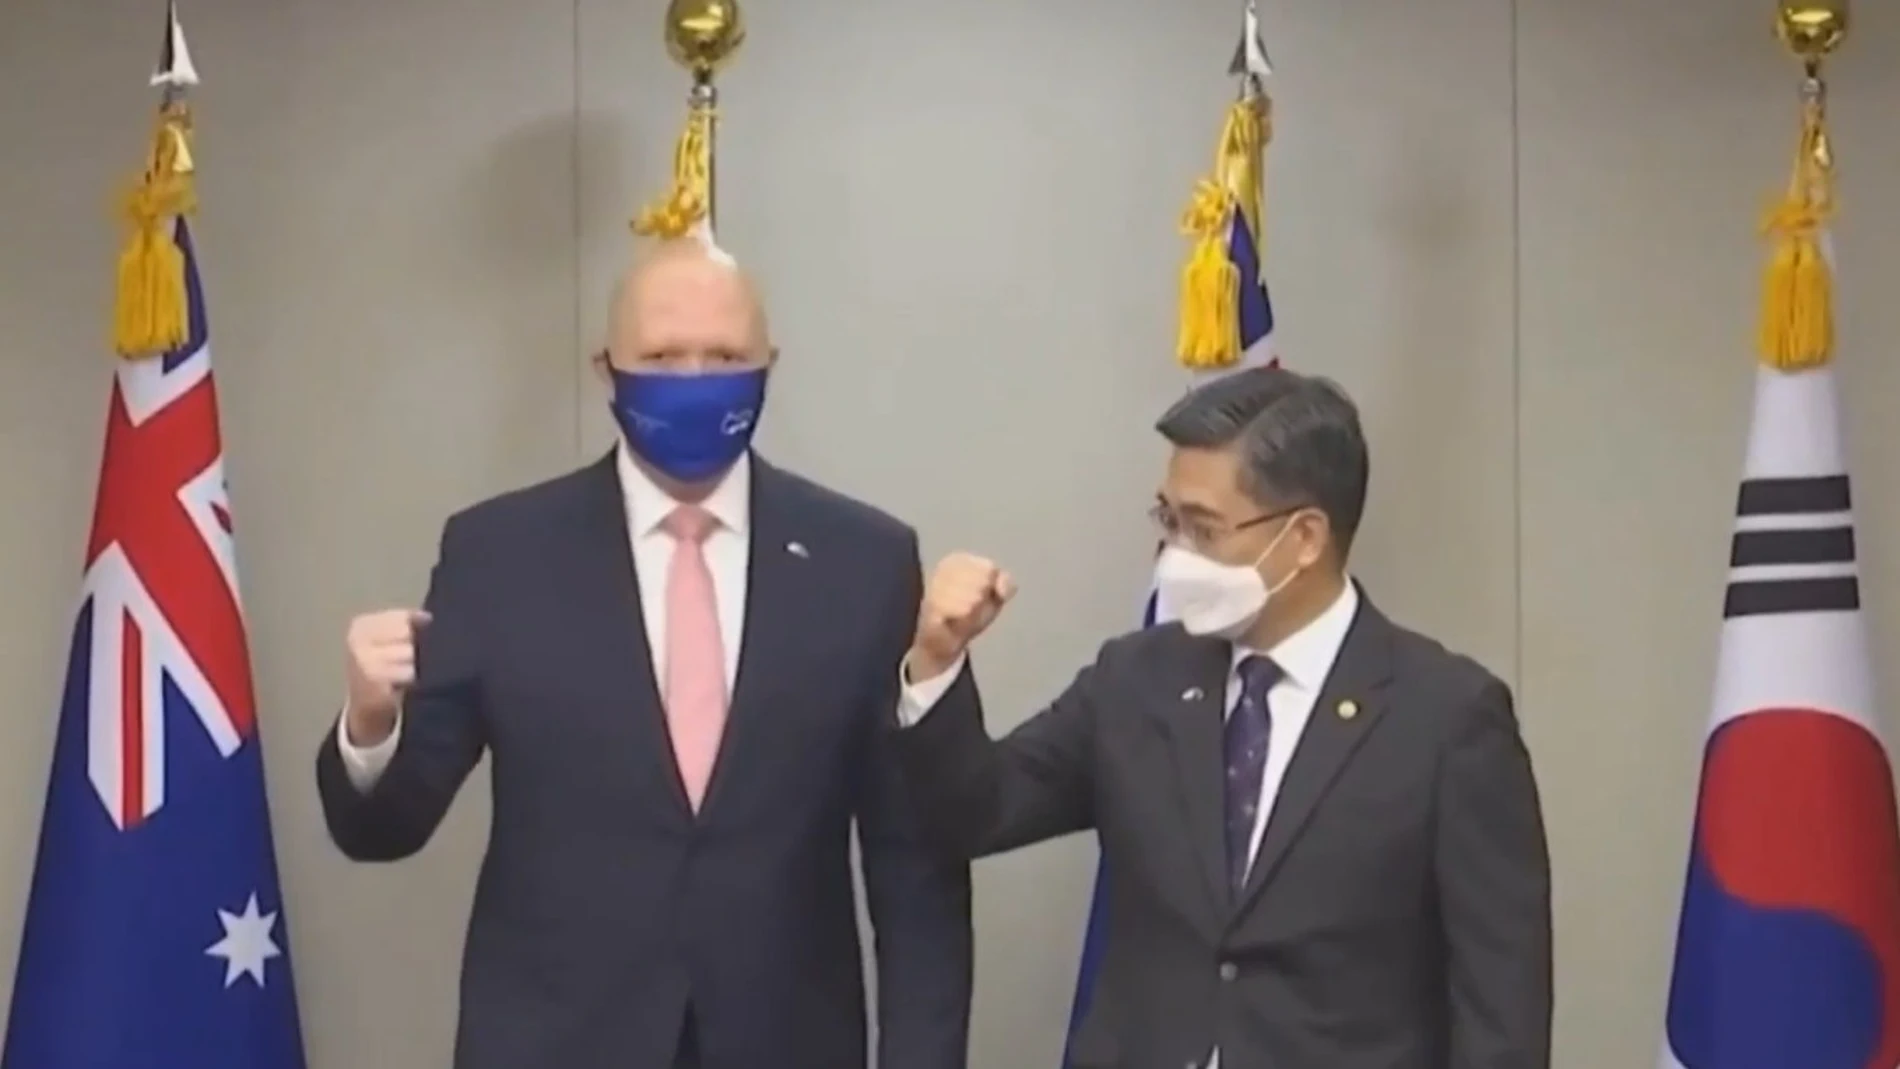 Los ministros de Sanidad de Corea y Australia protagonizan un divertido momento al saludarse con el codo